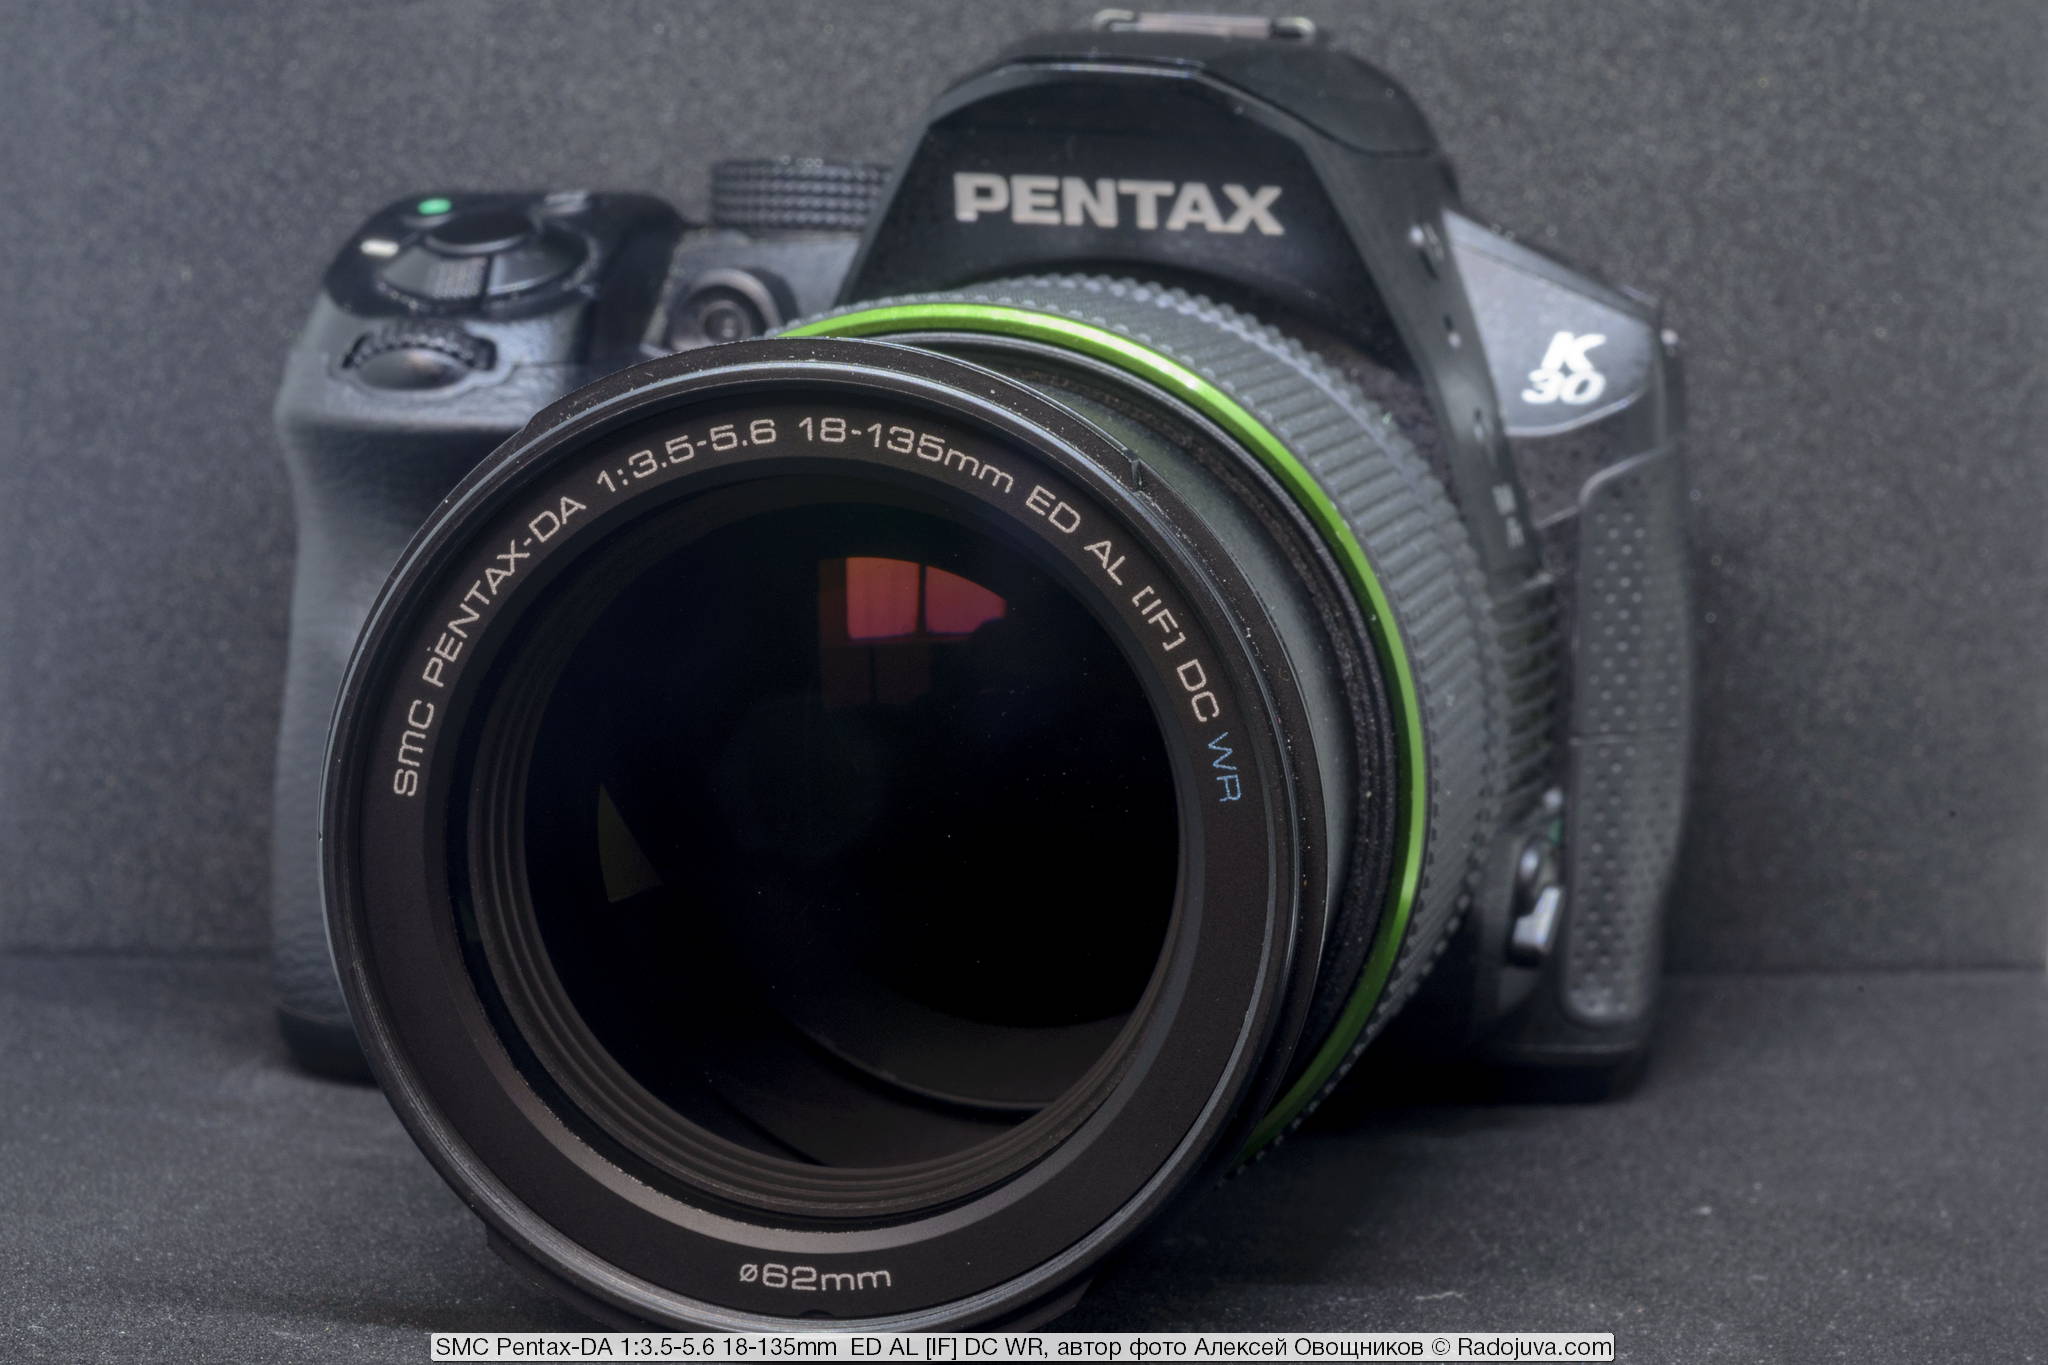 SMC Pentax-DA 1:3.5-5.6 18-135mm ED AL [IF] DC WR